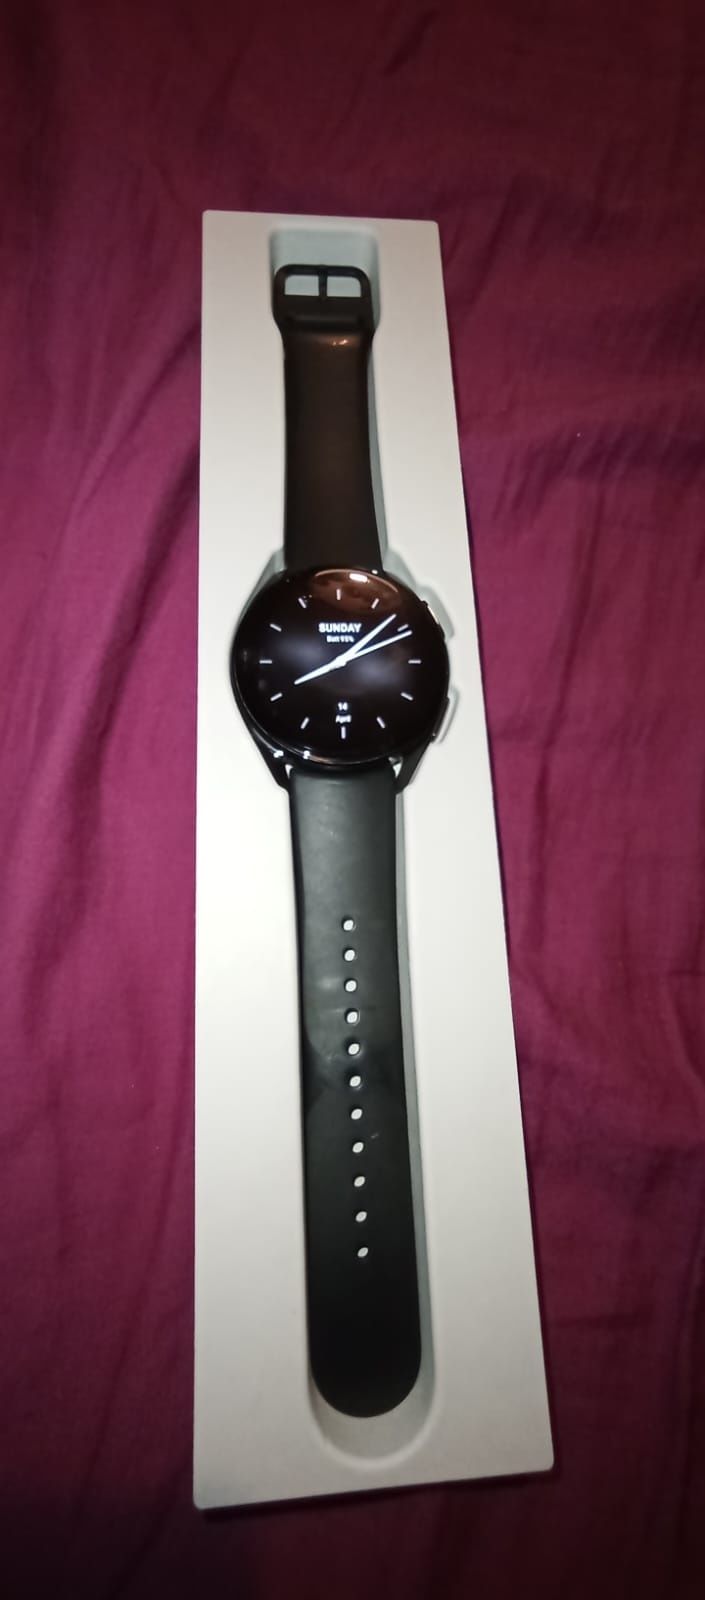 Xiaomi watch S2 praktycznie nowy. Idealny.